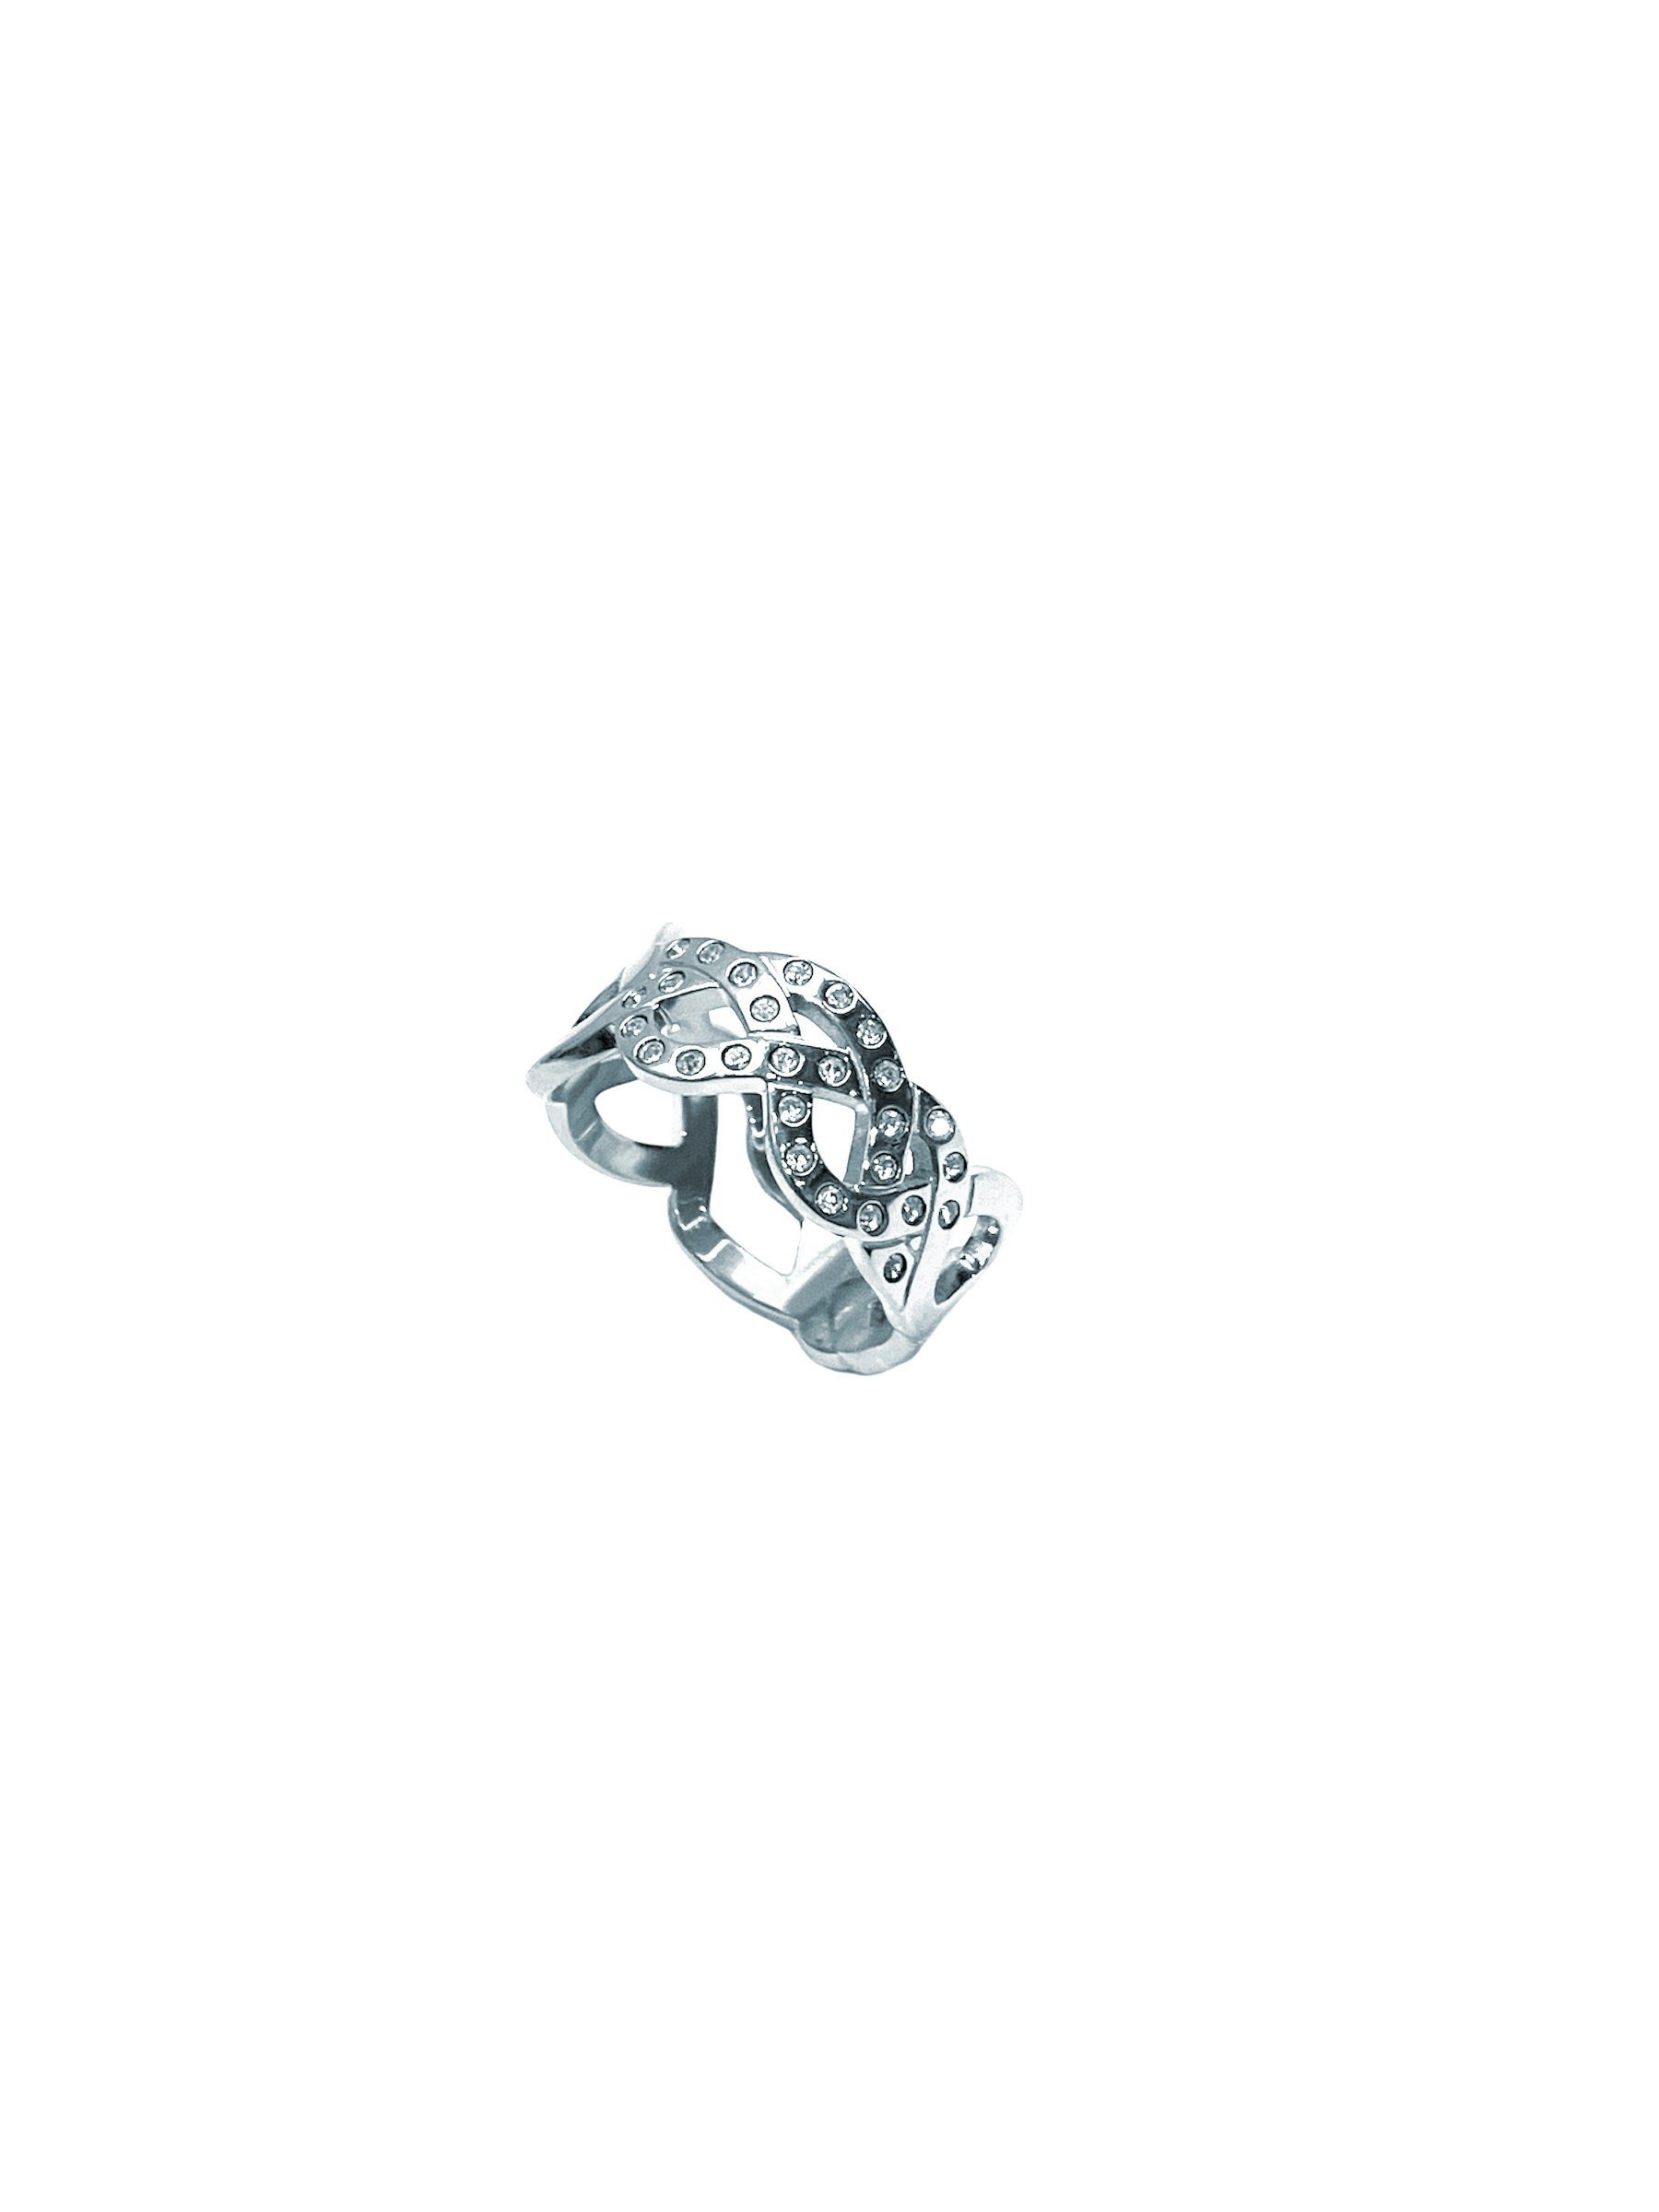 Swatch Bijoux Fingerring JRM065-7, Geschwungene Ringschiene die einer Krone ähnelt